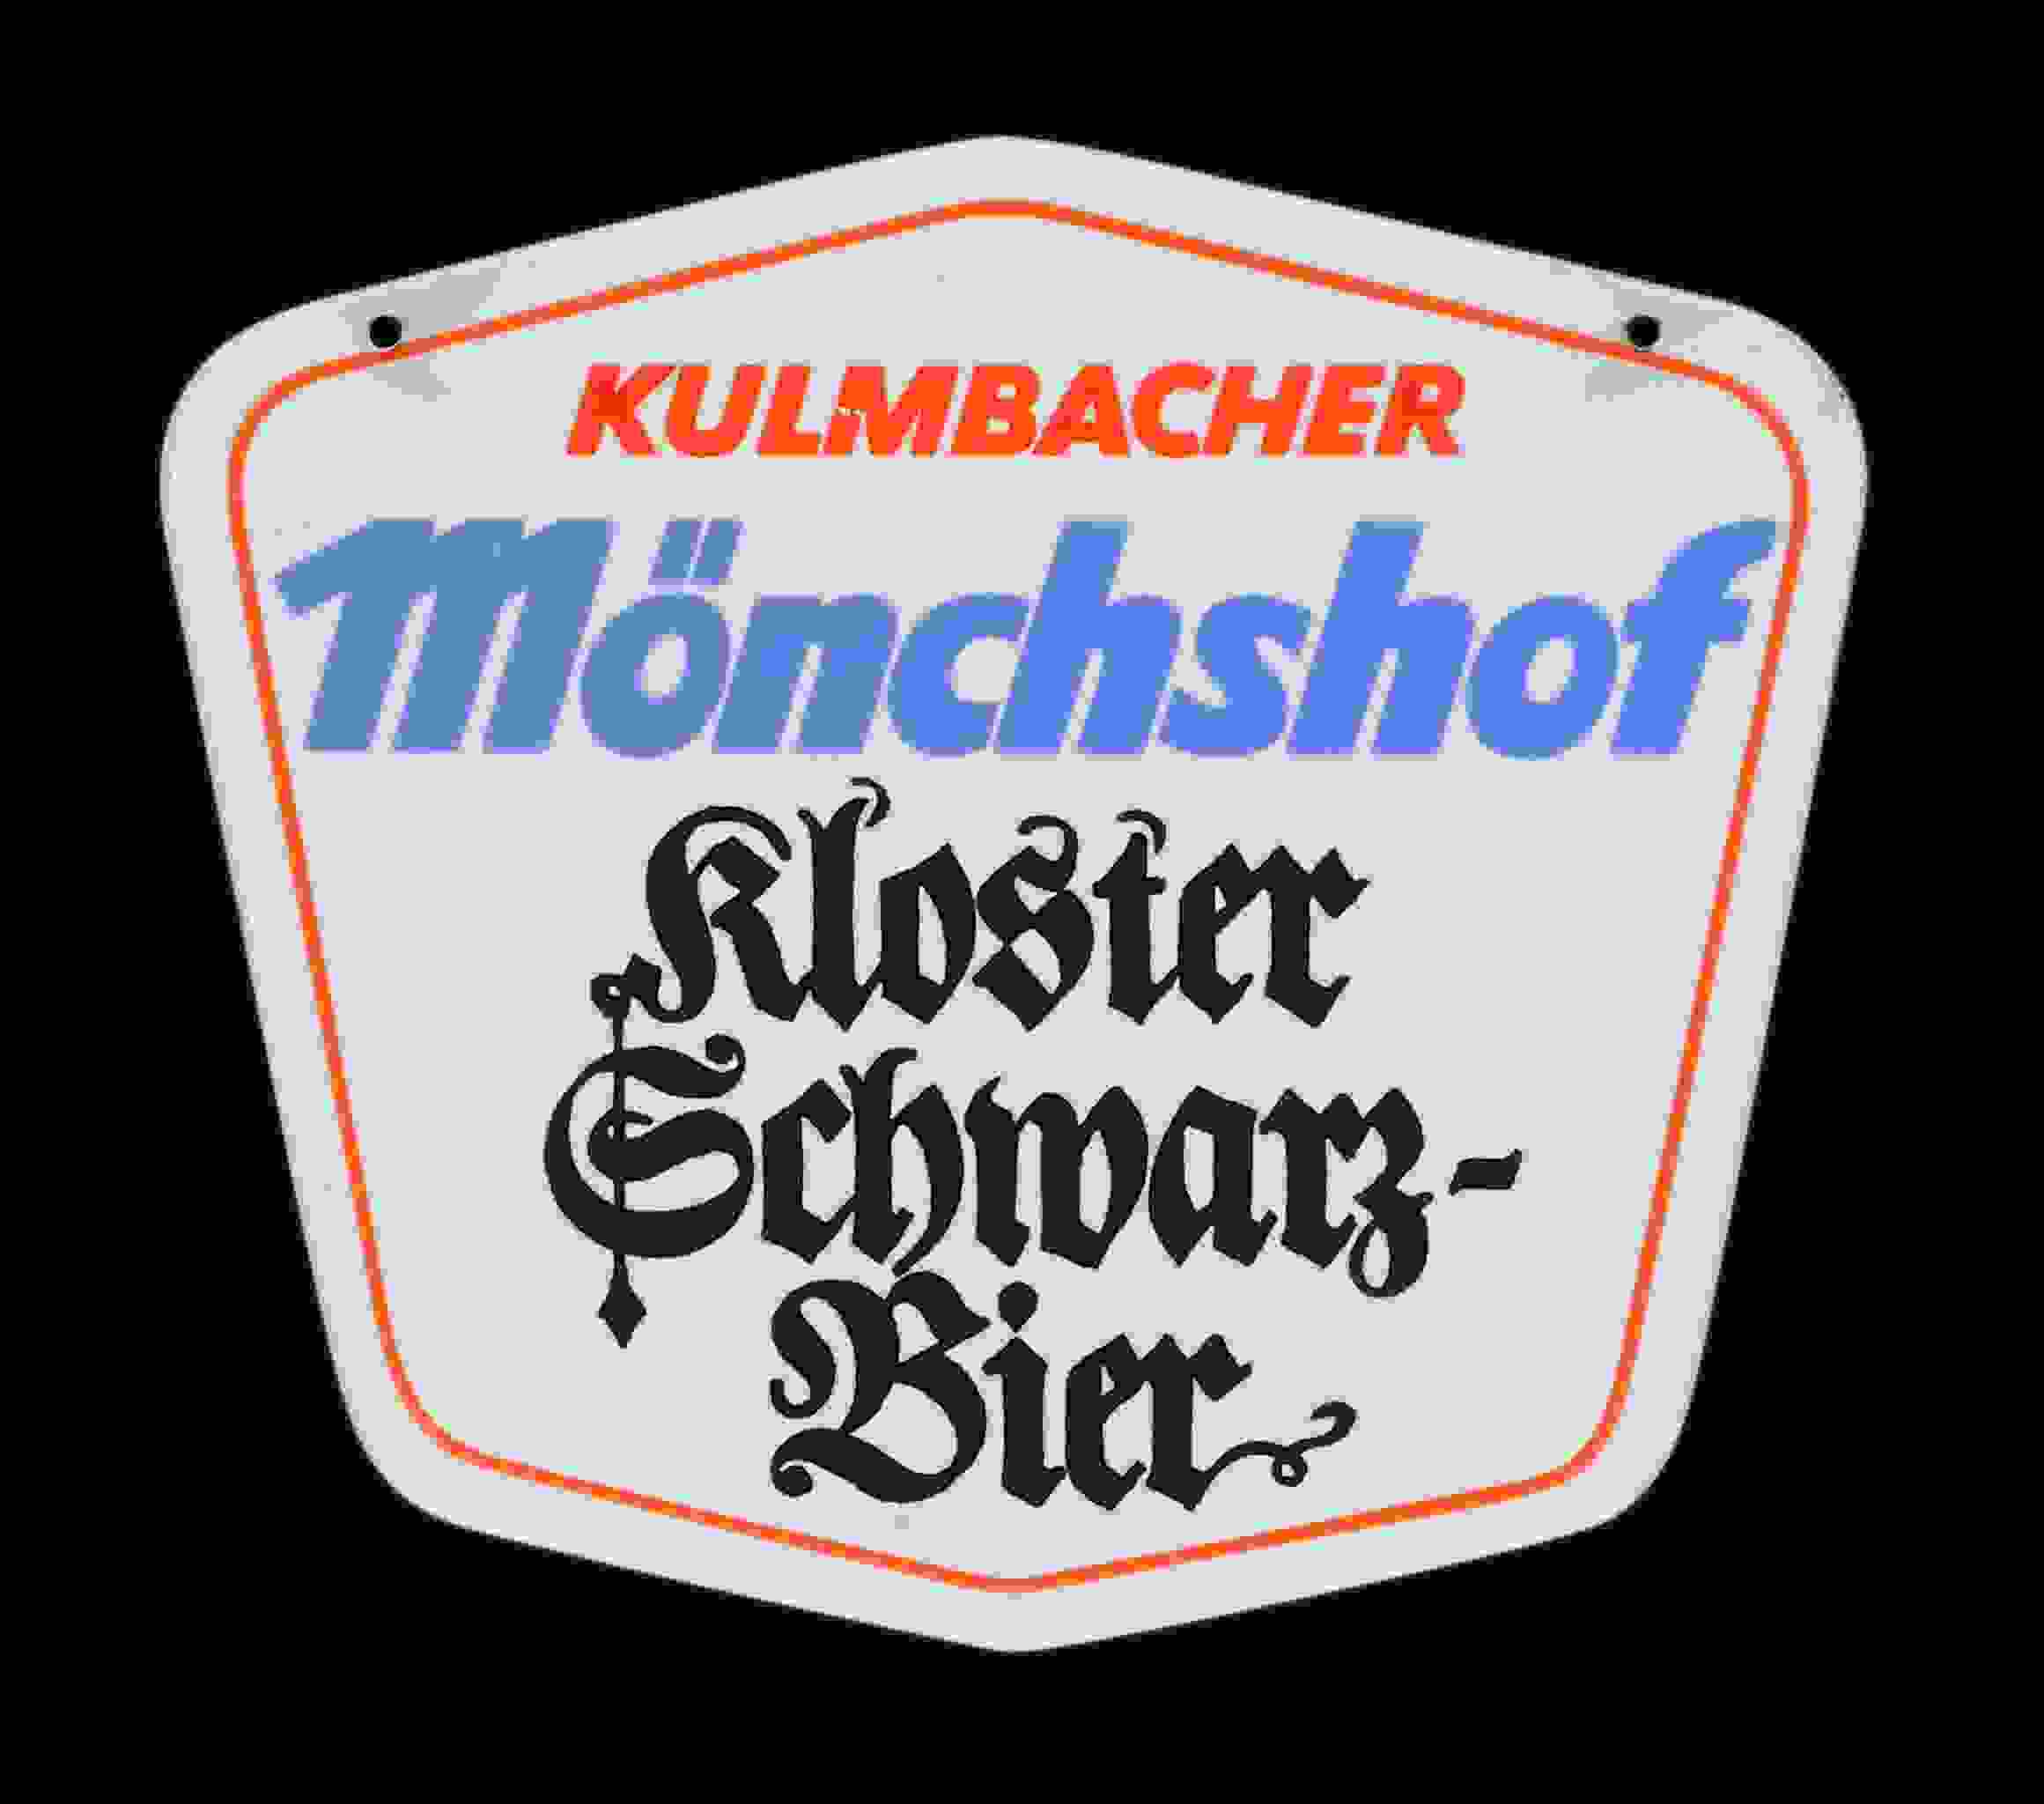 Kulmbacher Mönchshof Kloster Schwarz-Bier 